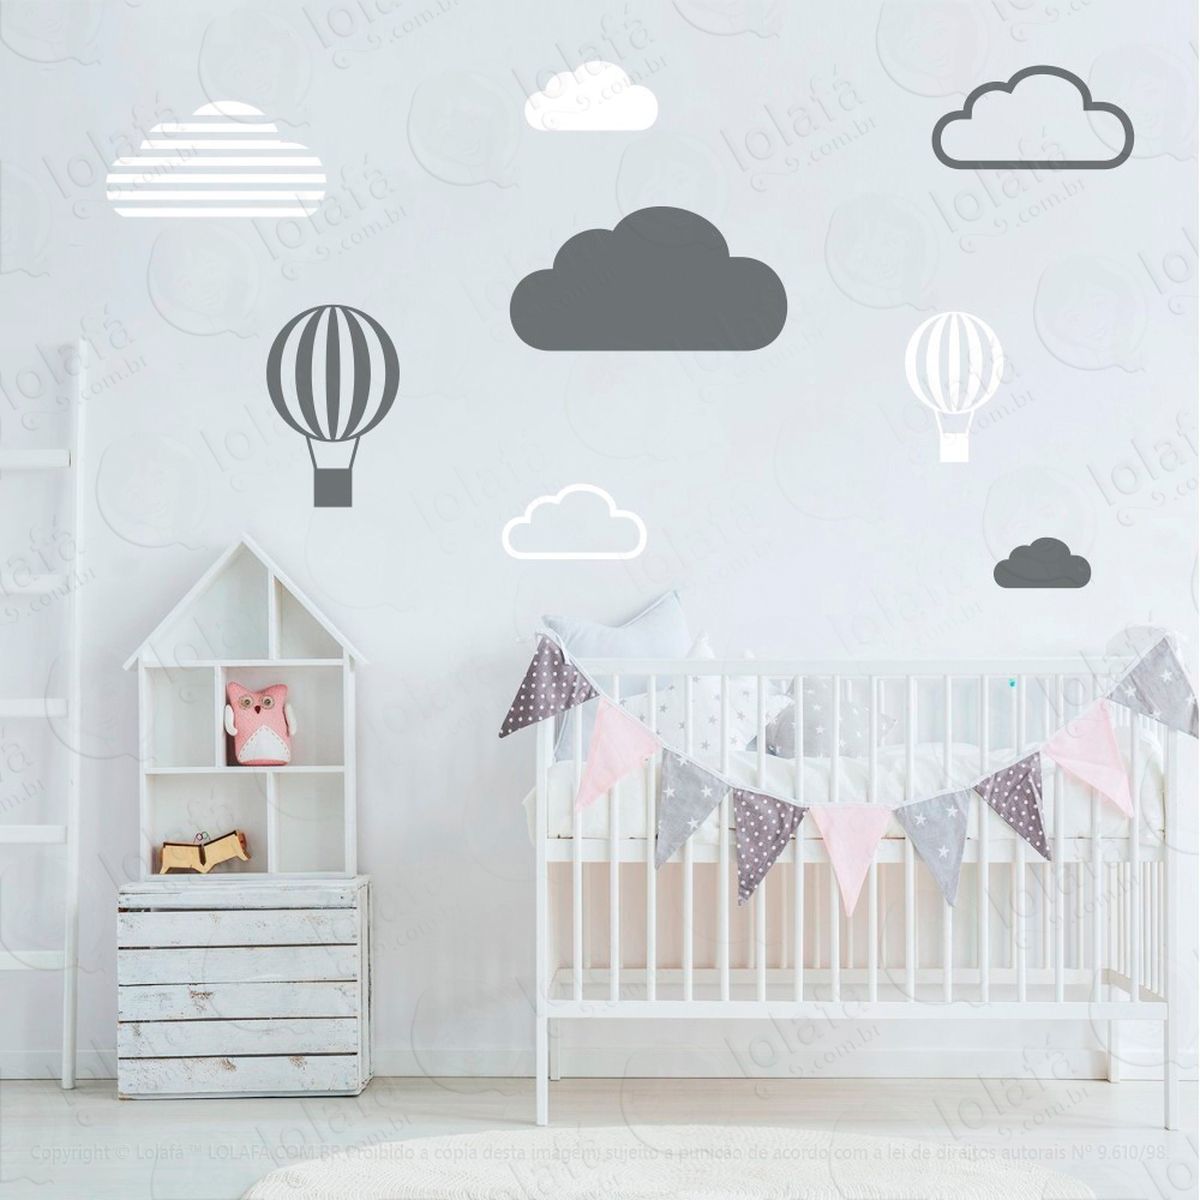 adesivos nuvens e balões 8 peças adesivos para quarto de bebê infantil - mod:636